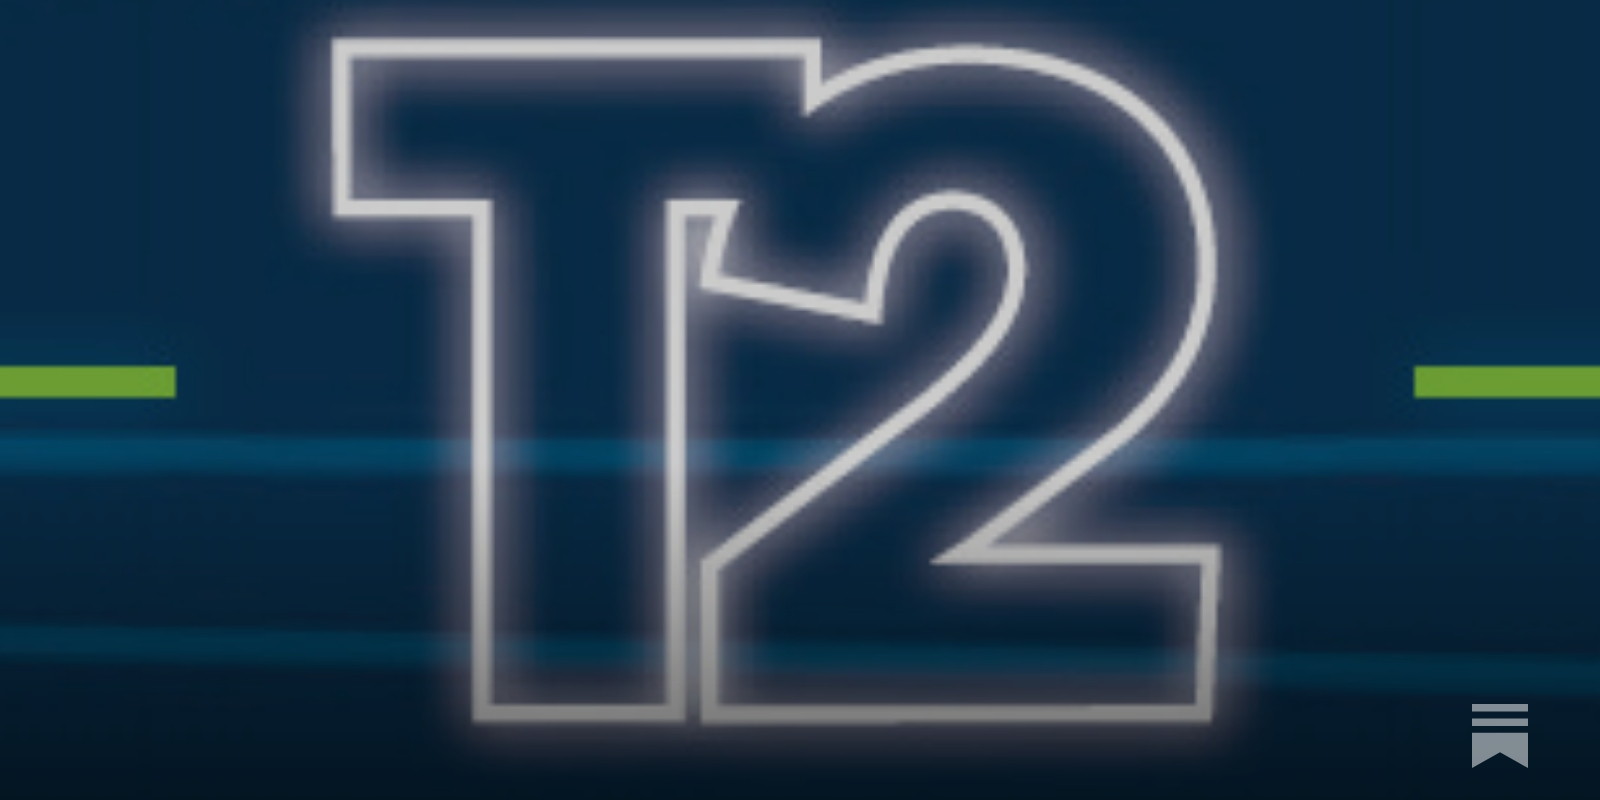 Download 2012 Re-Release v1.0 for GTA 3